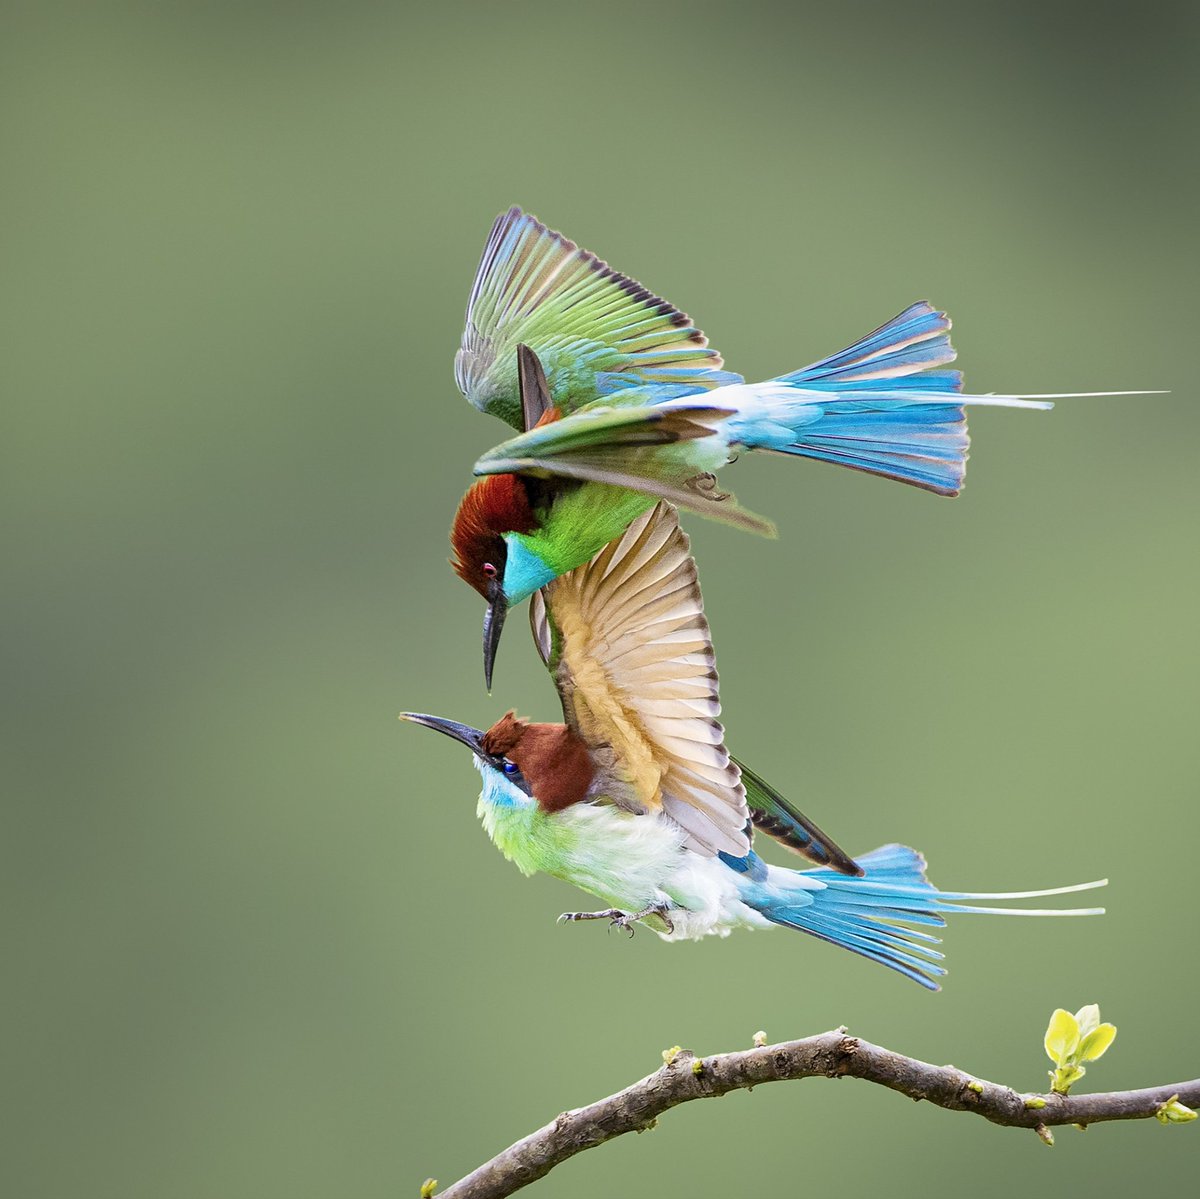 Guess the name of the bird😀😀 #birds #nature #photos #LovelyBirdsInChina